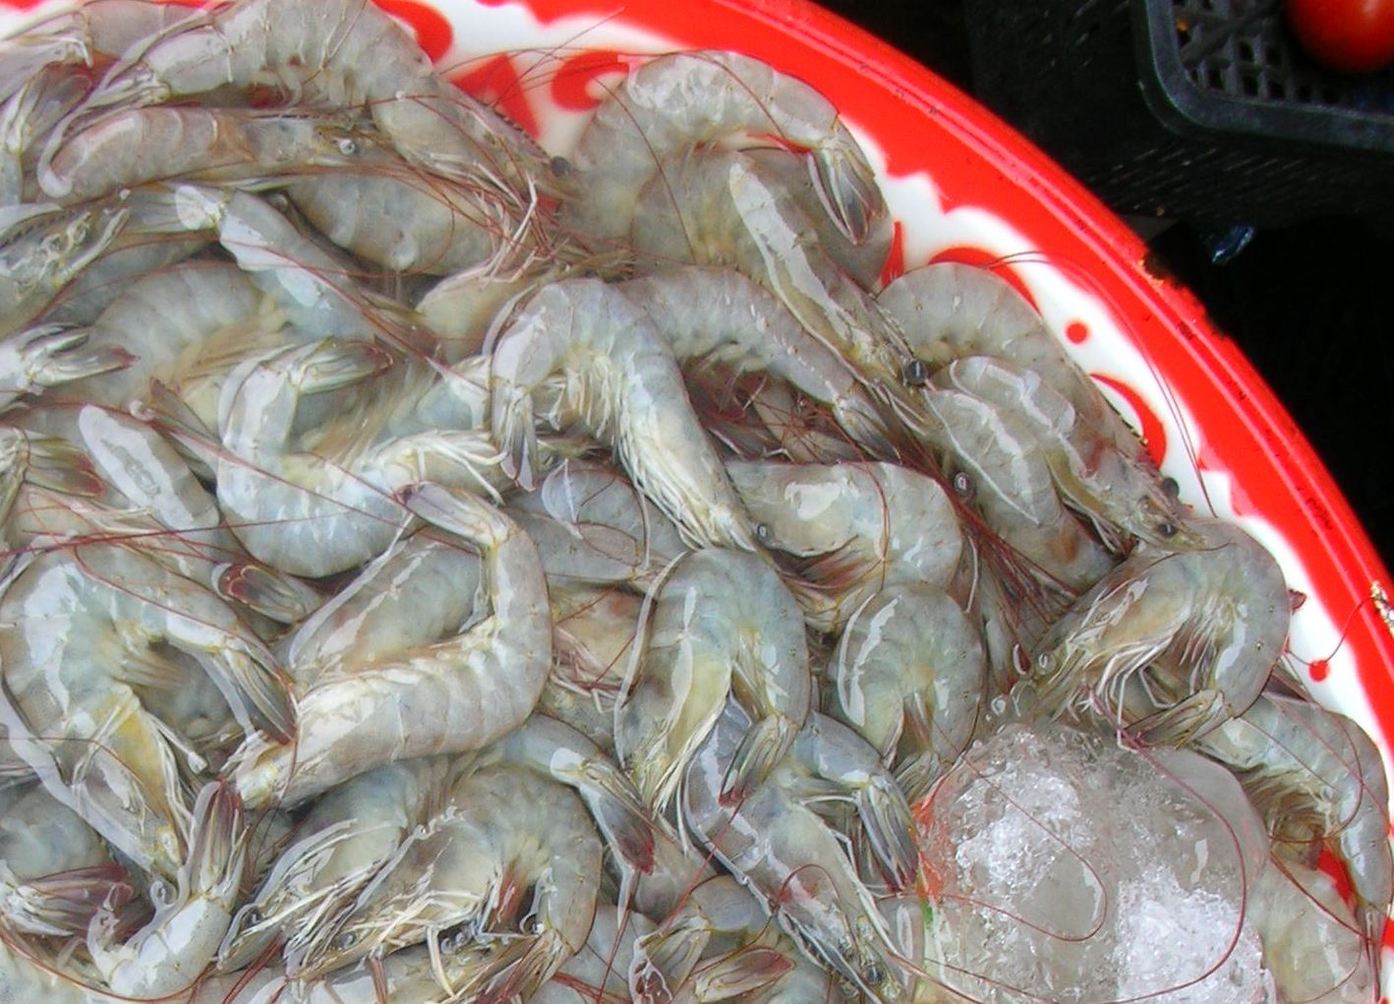 Whiteleg shrimp. Image: Wikimedia Commons/Xufanc